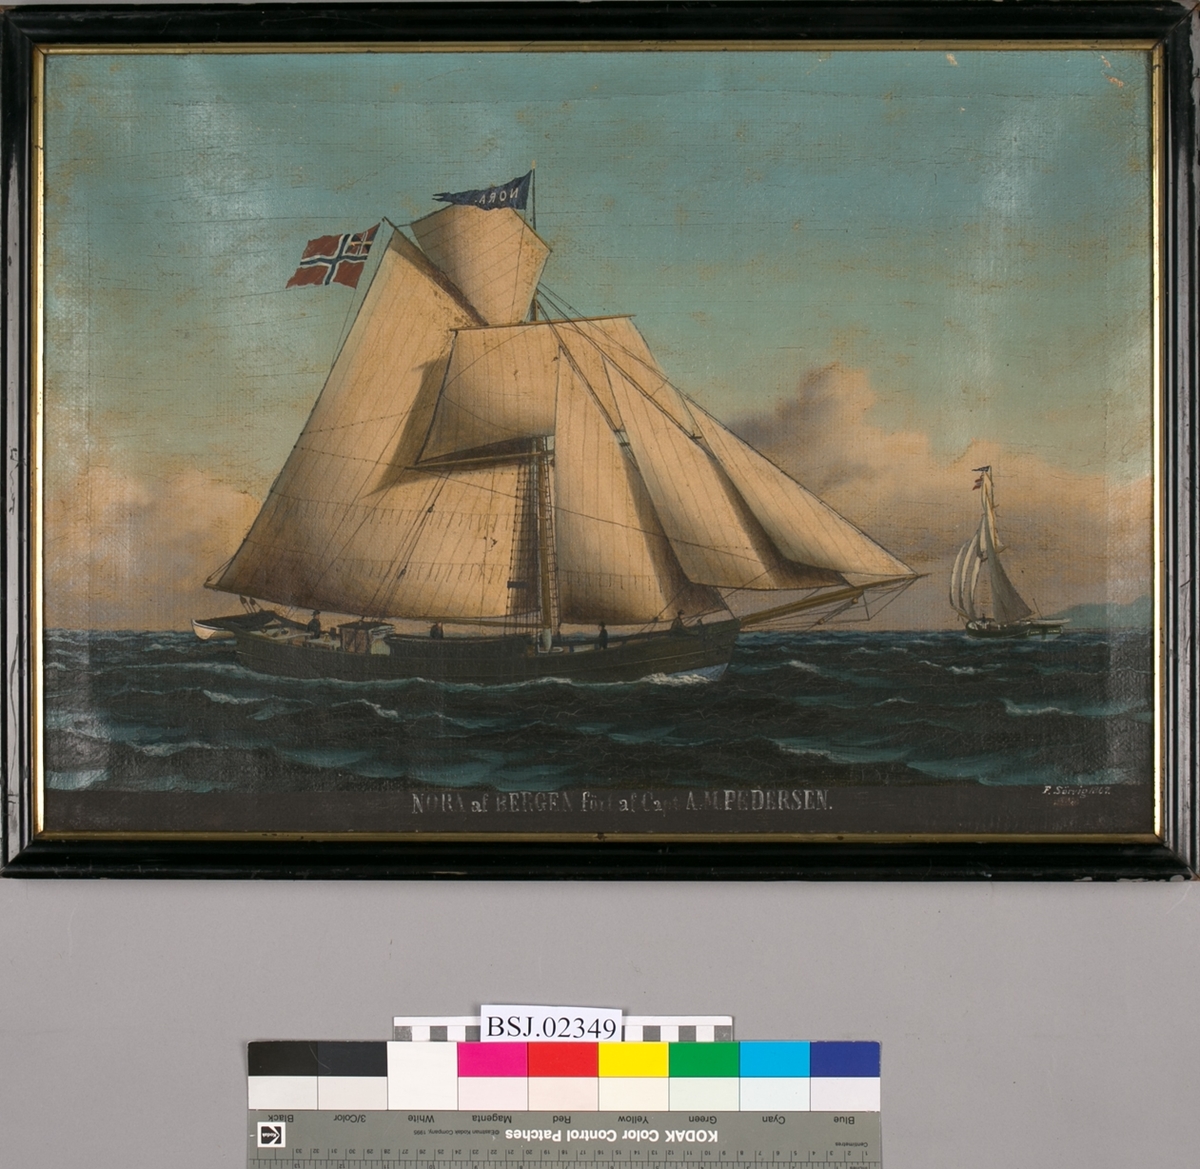 Skipsportrett av jakt NORA ført av kaptein A.M. Pedersen. Under fulle seil med unionsflagg